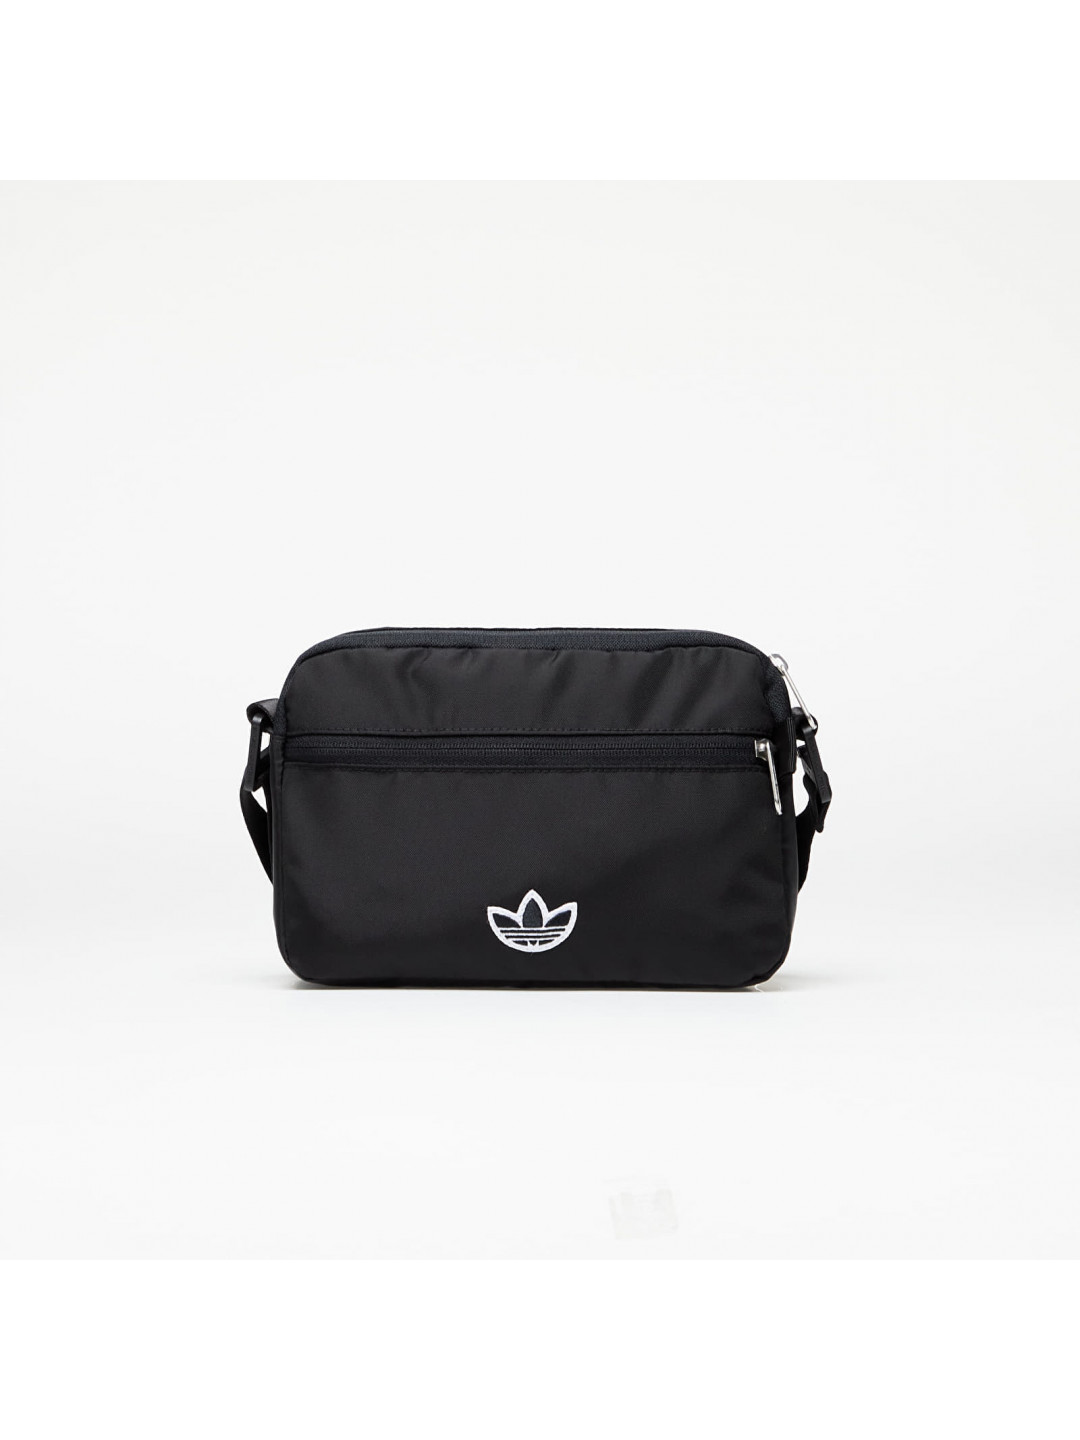 Adidas Premium Essentials Small Airliner Bag Black